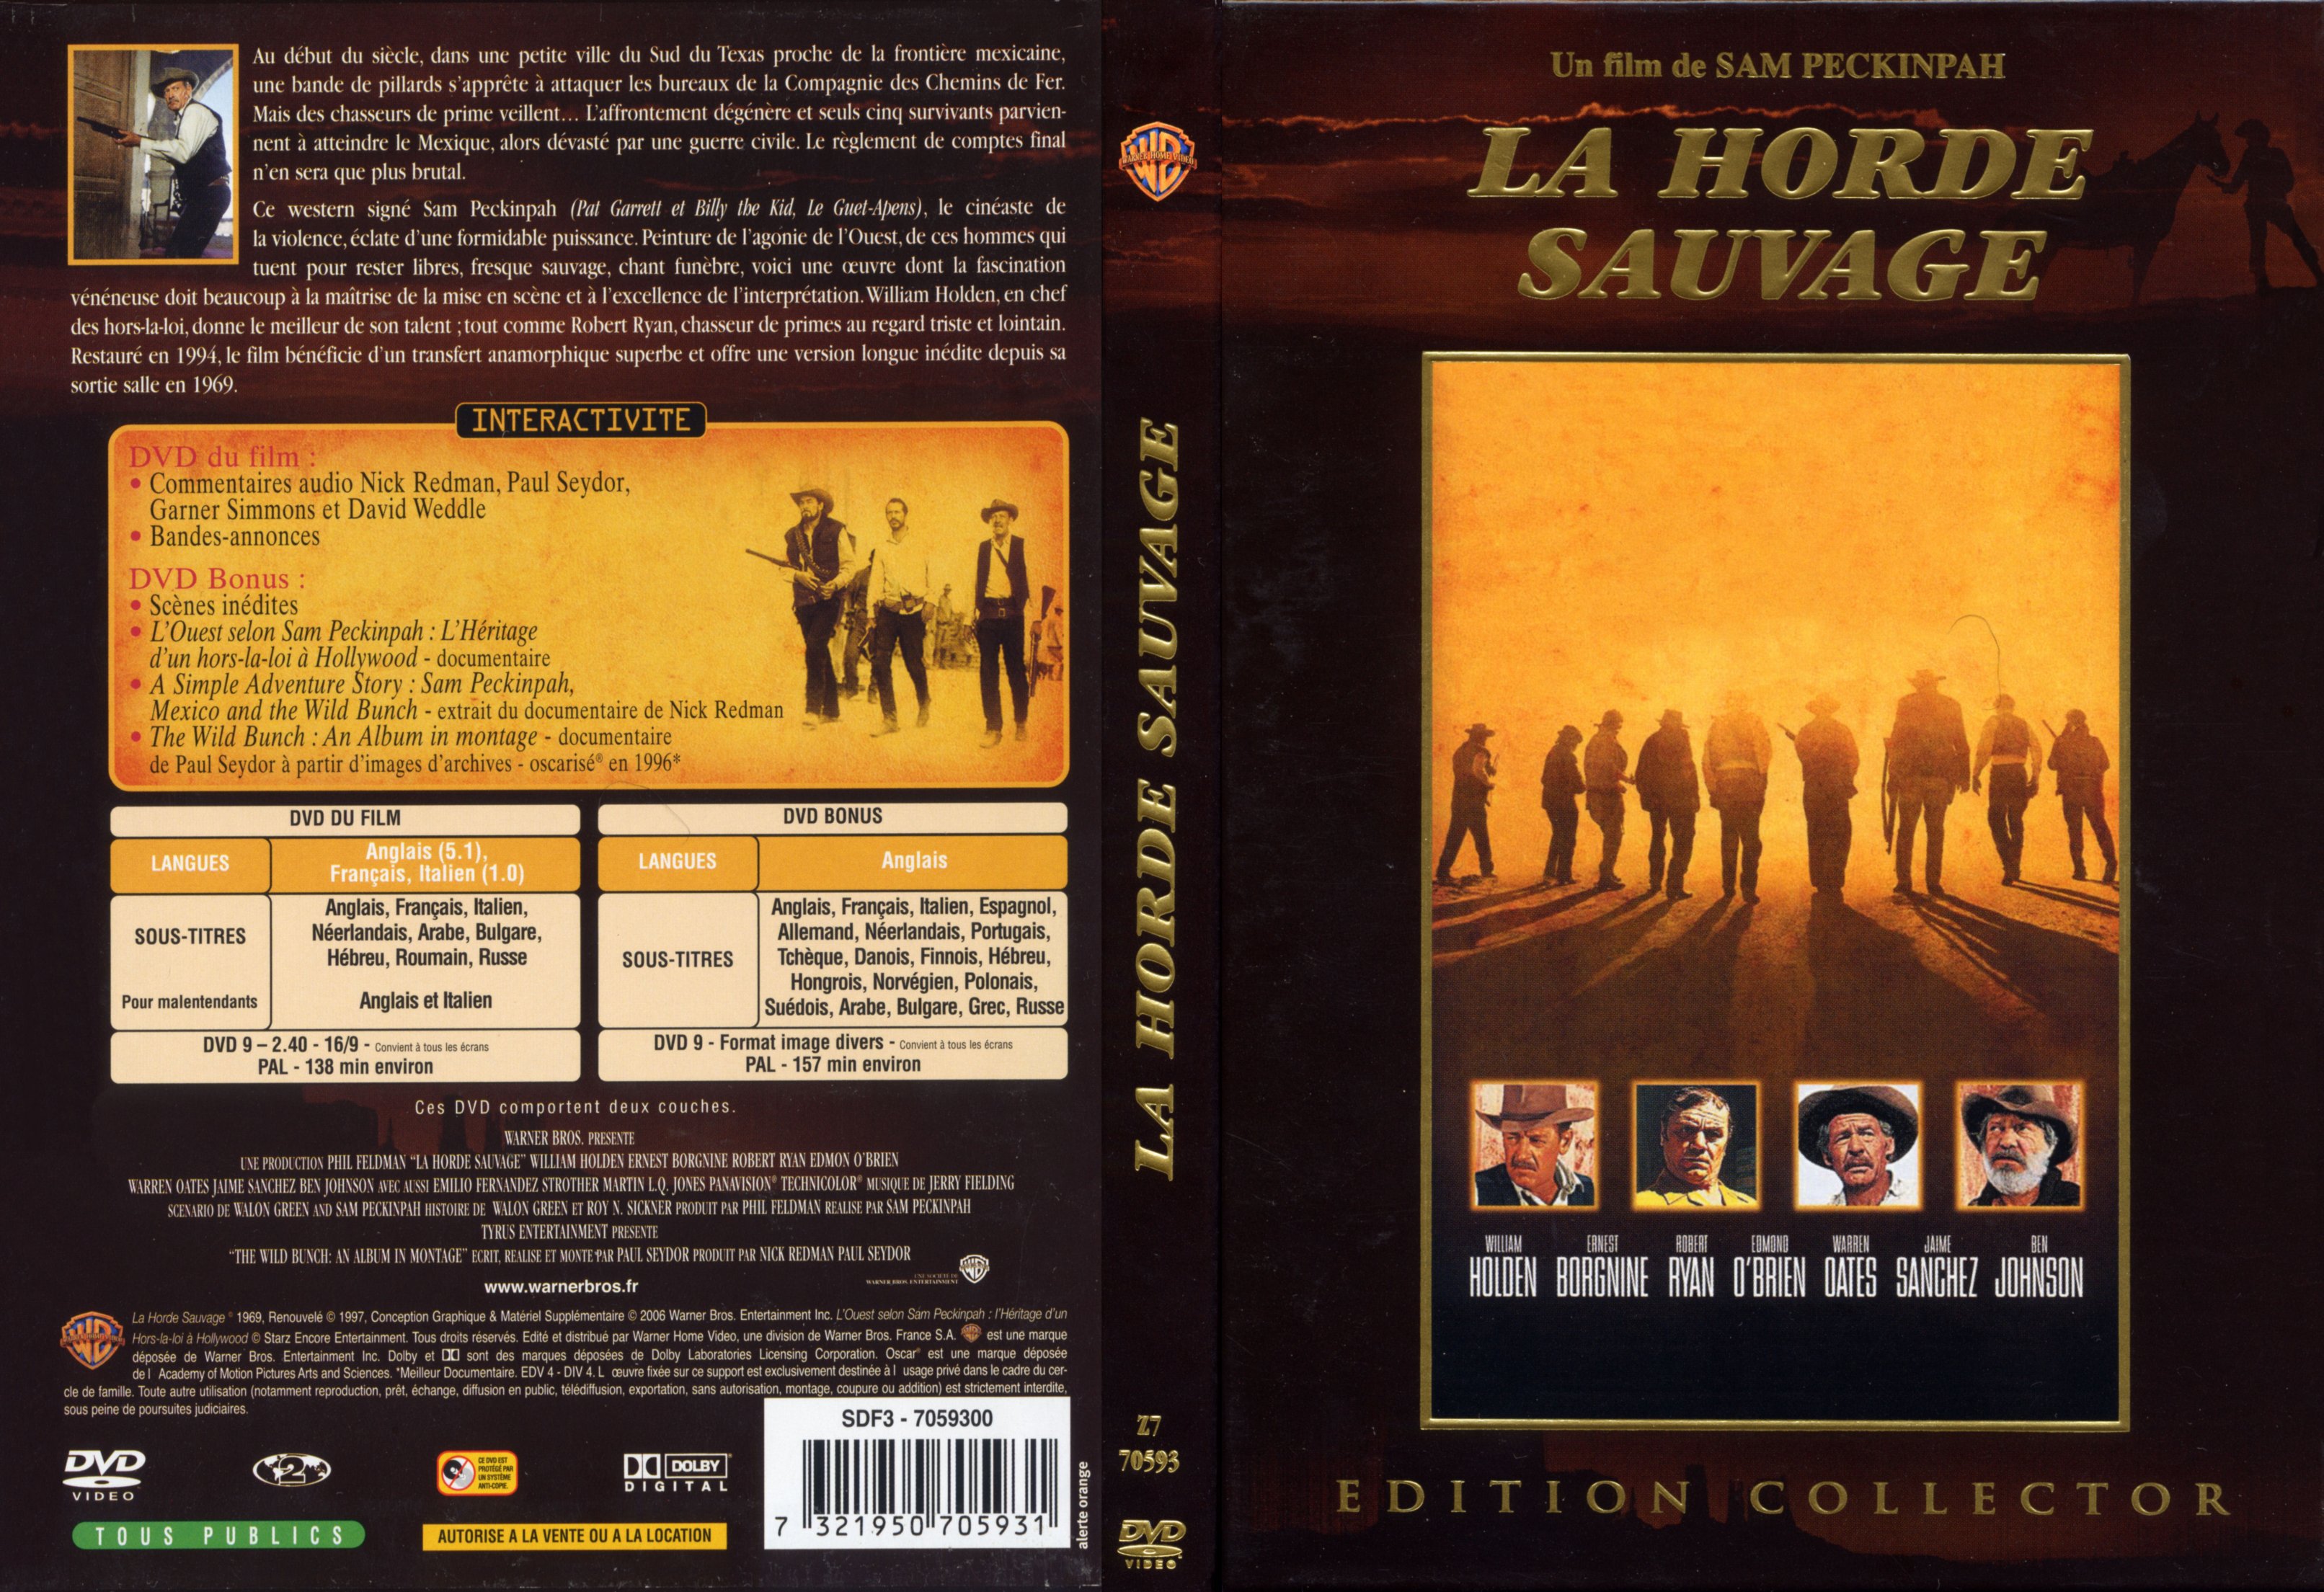 Jaquette DVD La horde sauvage v2